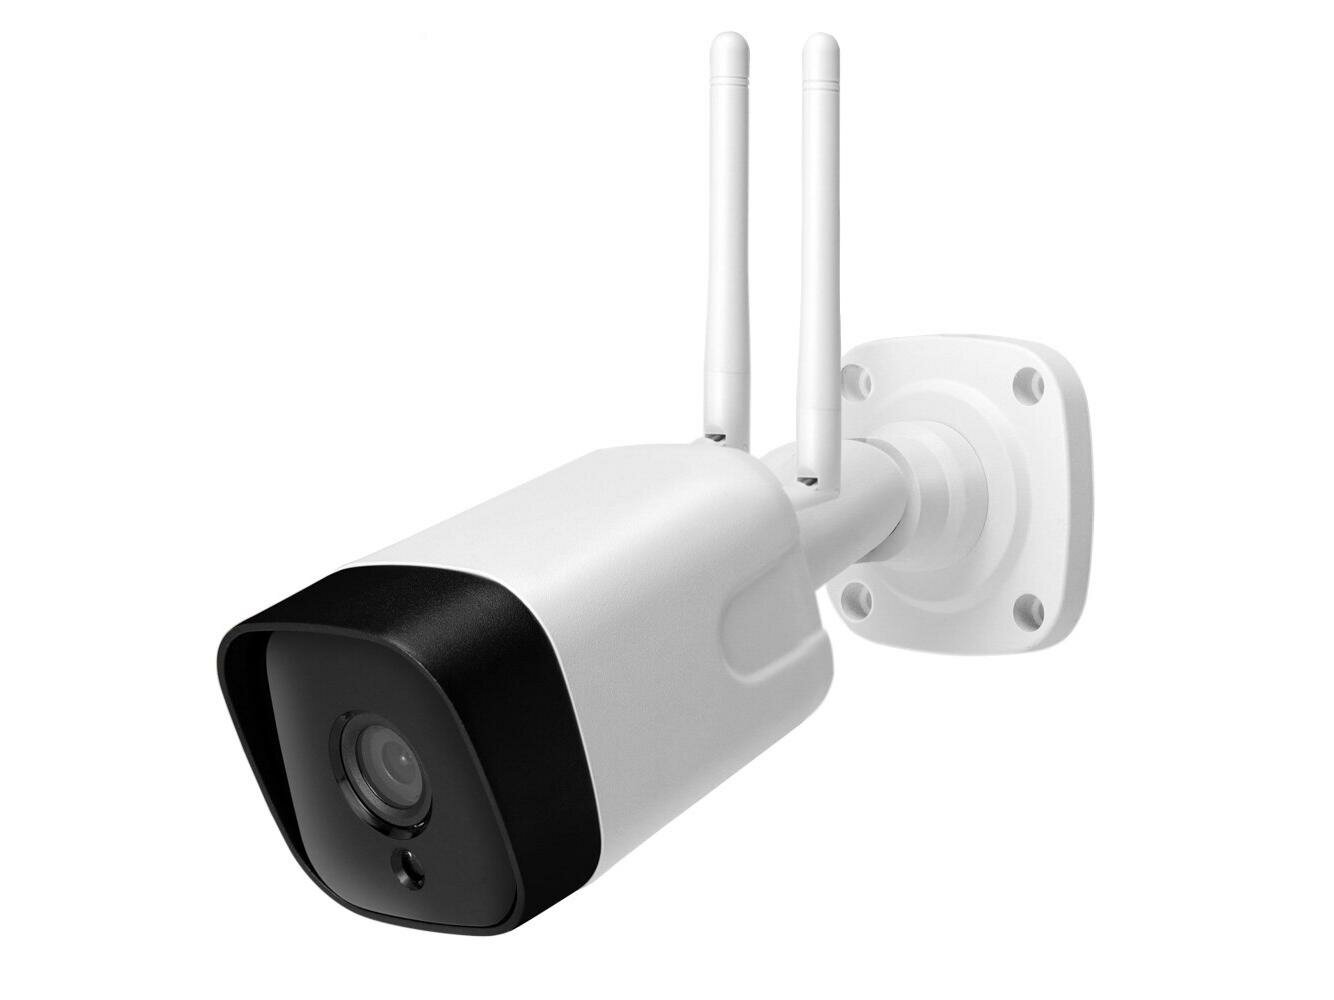 4G IP-камера Линк NC210G-8GS (E70565UL) - 3g/4g камера уличная, gsm камера для видеонаблюдения, видеокамера для наблюдения